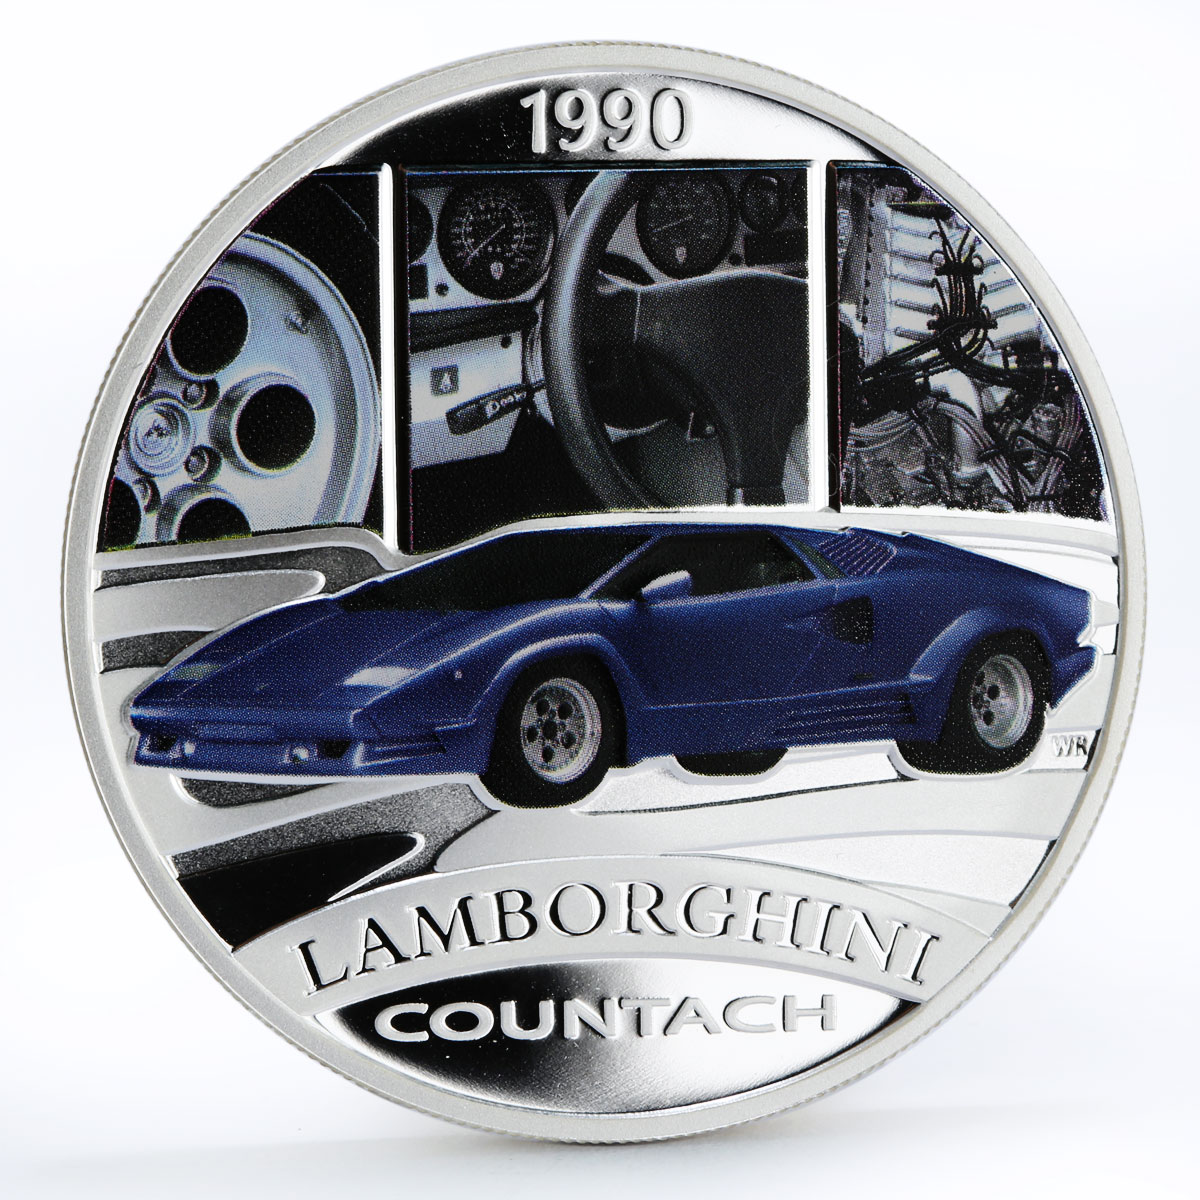 Tuvalu 1 dollar Lamborghini Countach colored silver proof coin 2006